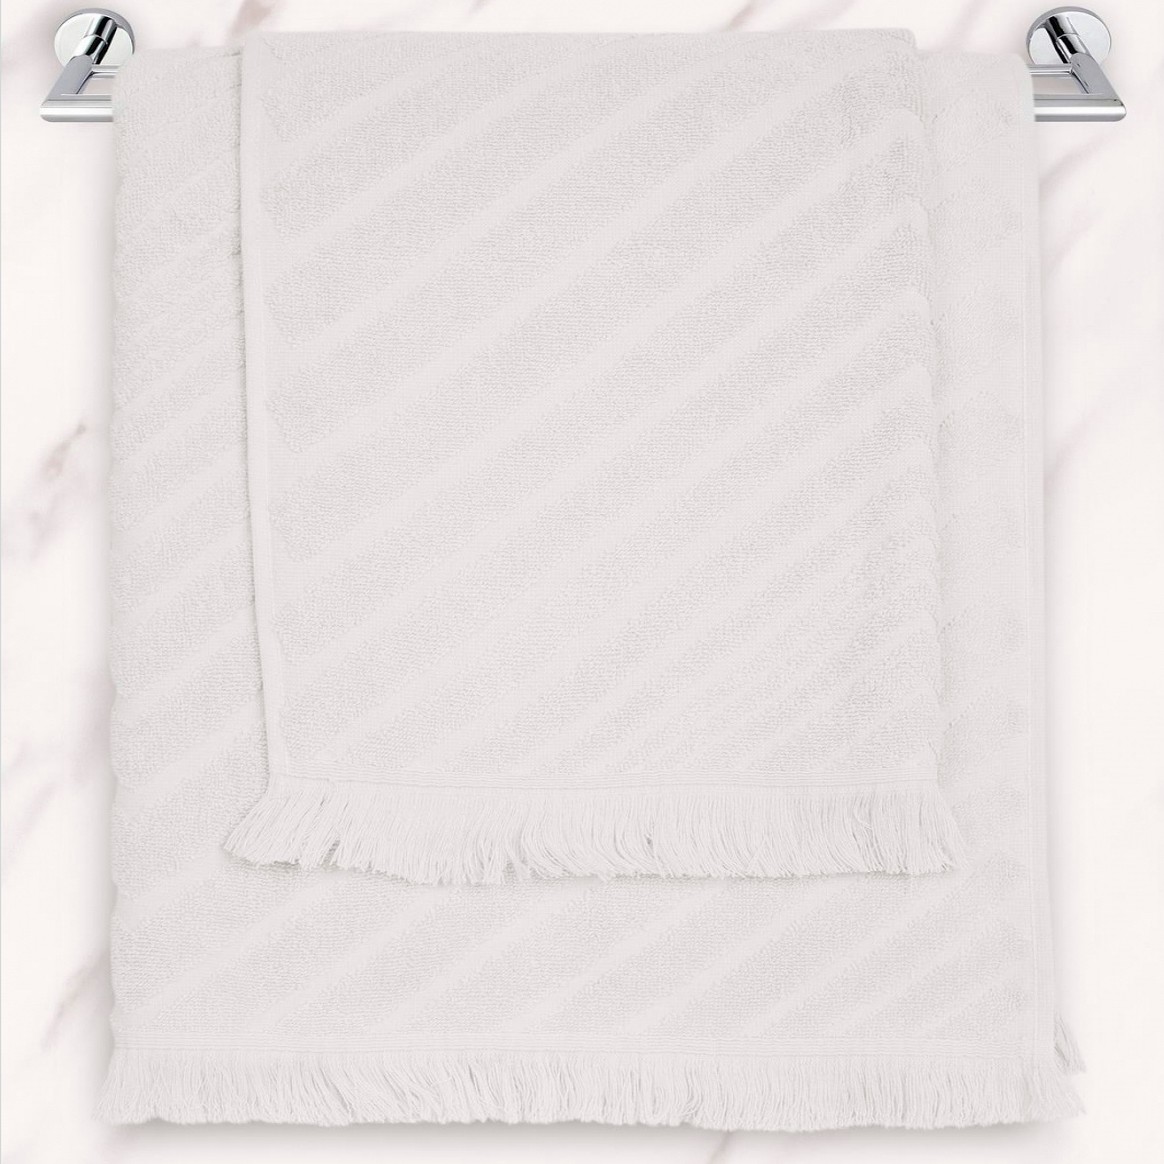 Полотенце Evan цвет: белый (50х70 см), размер 50х70 см sofi753847 Полотенце Evan цвет: белый (50х70 см) - фото 1